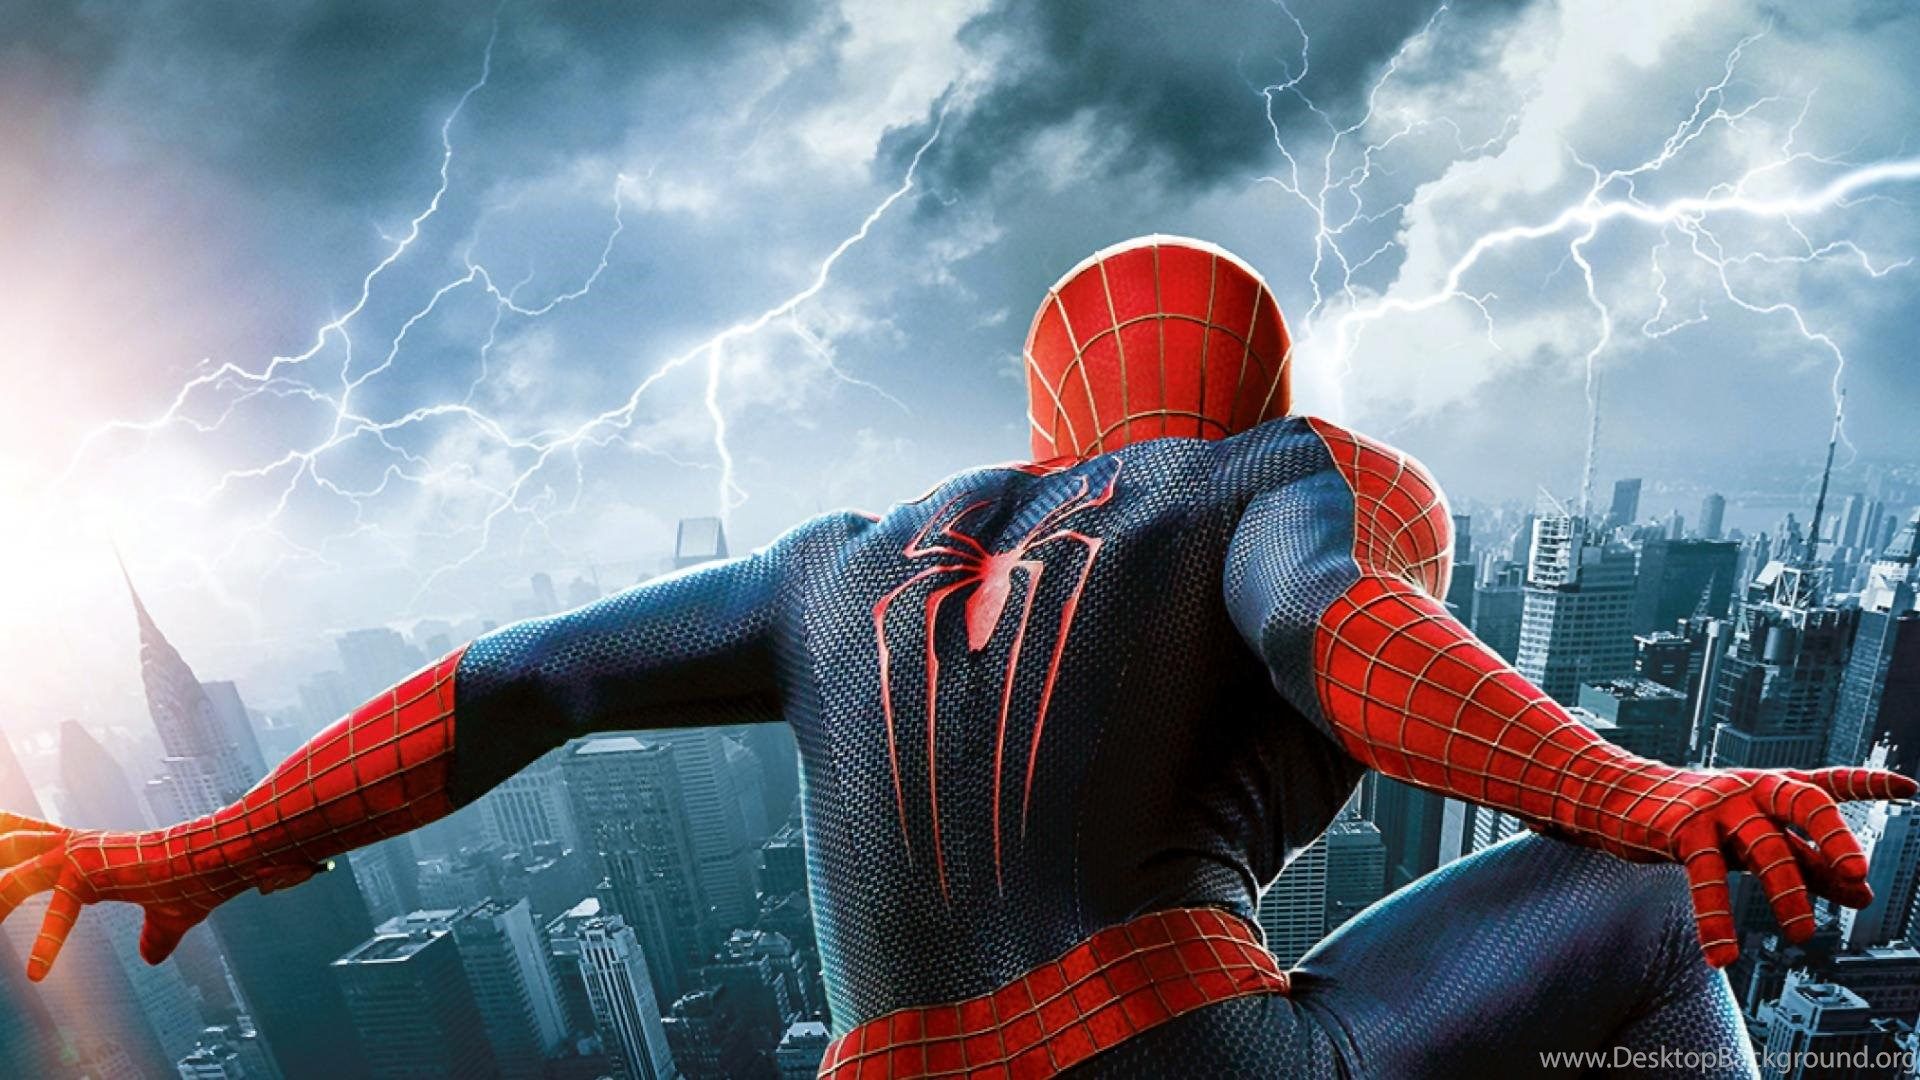 Justpict.com Spiderman Trilogy Wallpaper Desktop Background